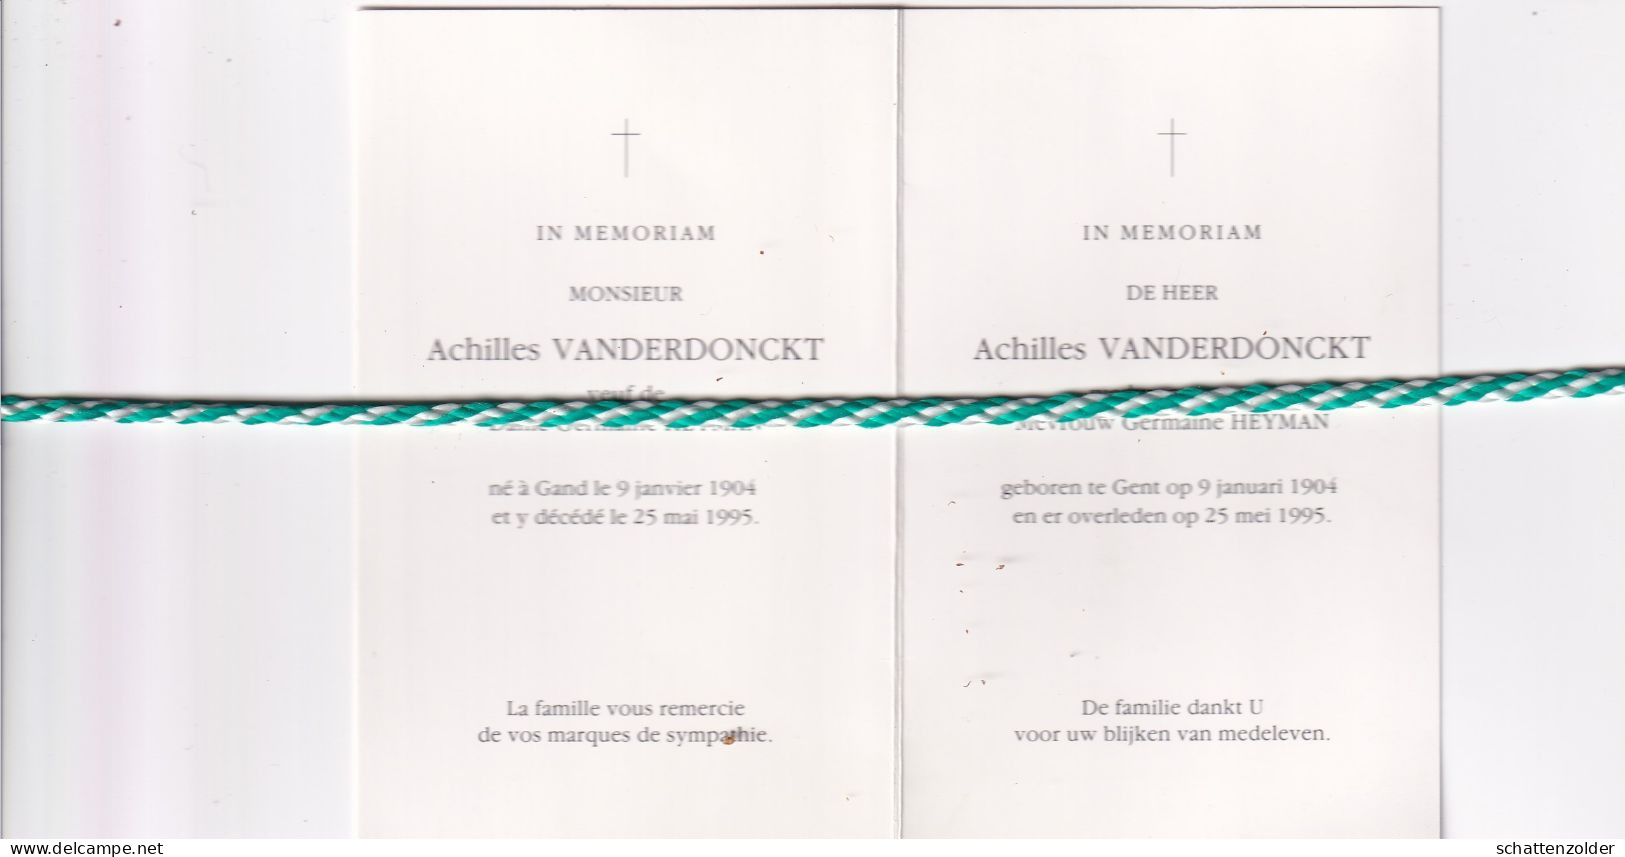 Achilles Vanderdonckt-Heyman, Gent 1904, 1995. - Todesanzeige